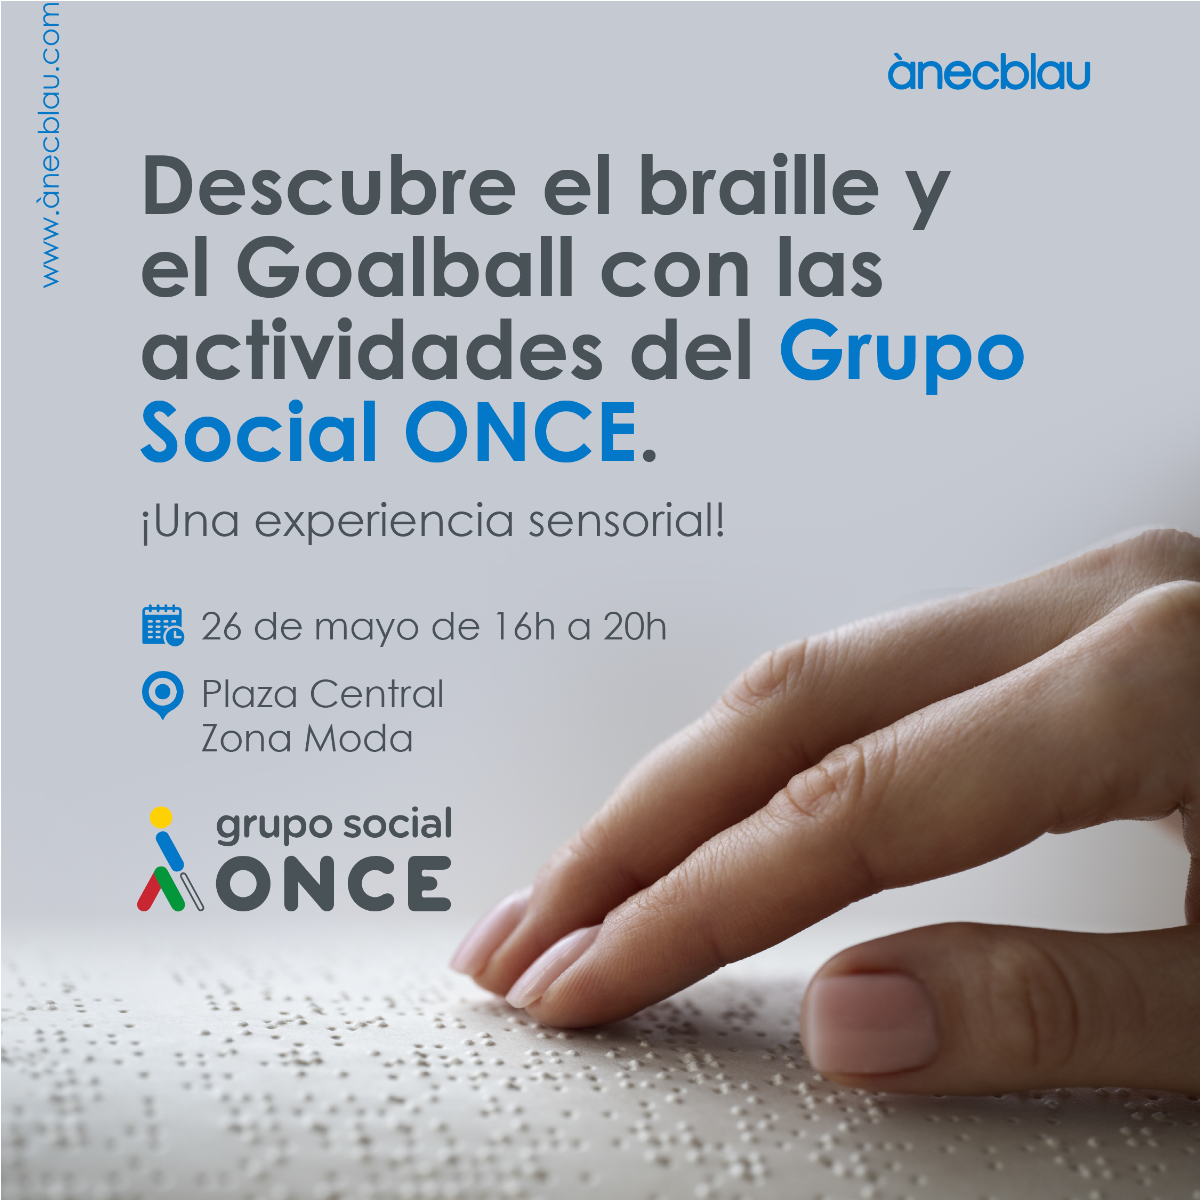 Cartel promocional de la exposición de la ONCE en ànecblau, sobre el braille, el “Goalball” y la vida diaria de las personas con discapacidad visual